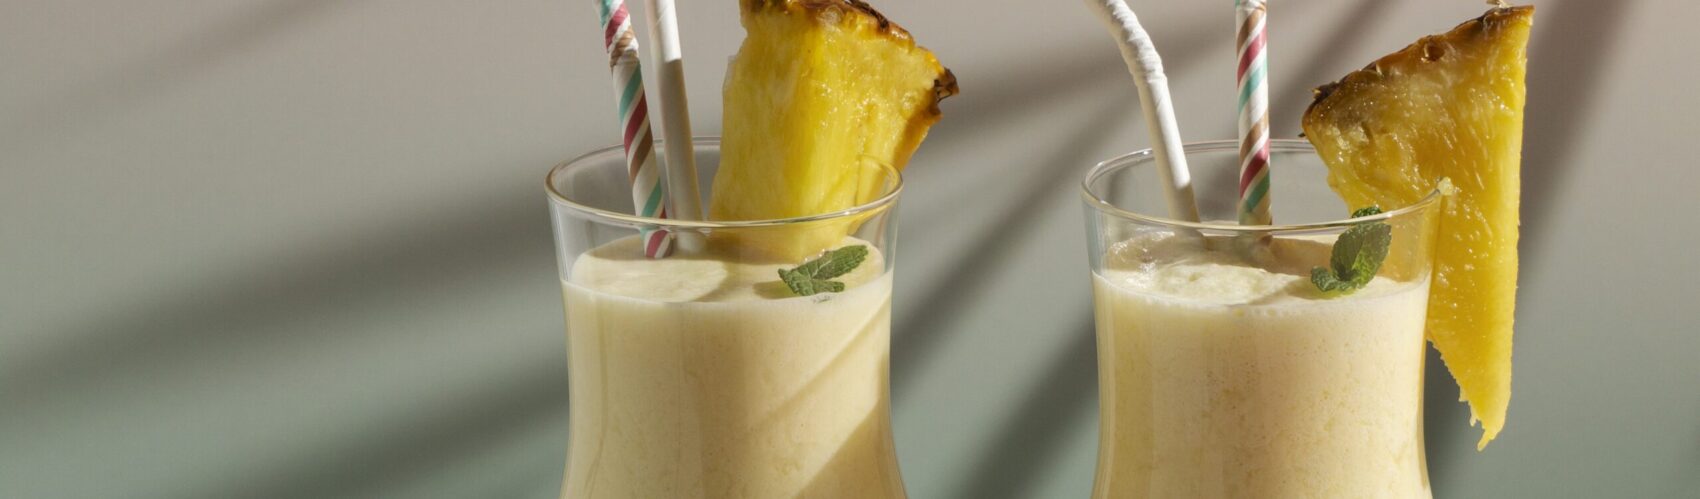 Shake soja coco ananas (Pina Colada vierge)